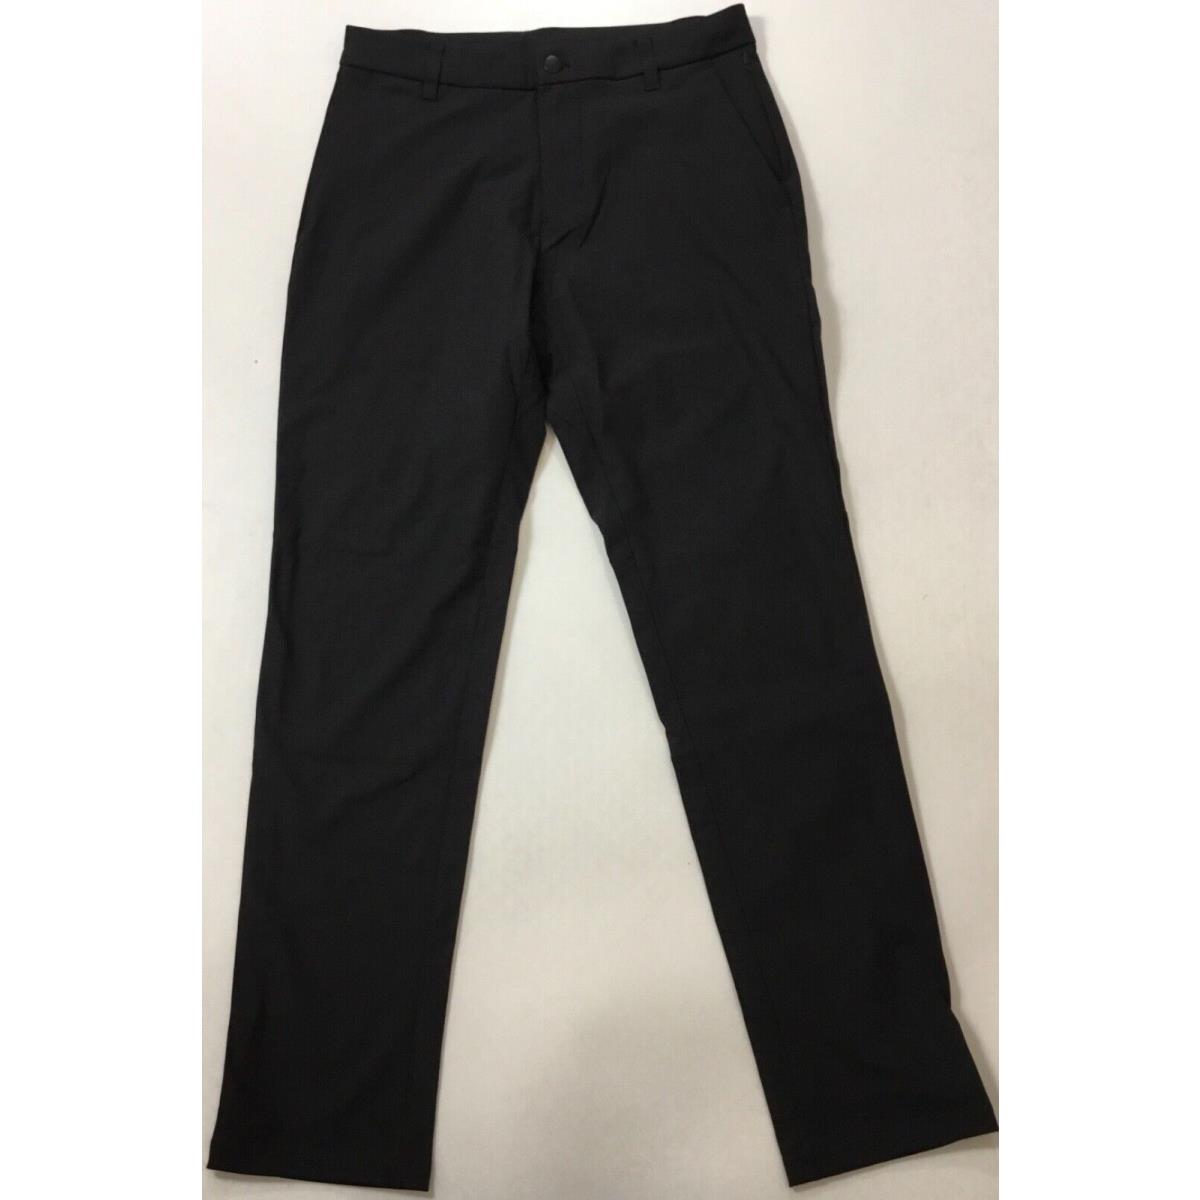 Lululemon Men s Pants Commission Pant Classic 32 Length LM5985S Black Size 31